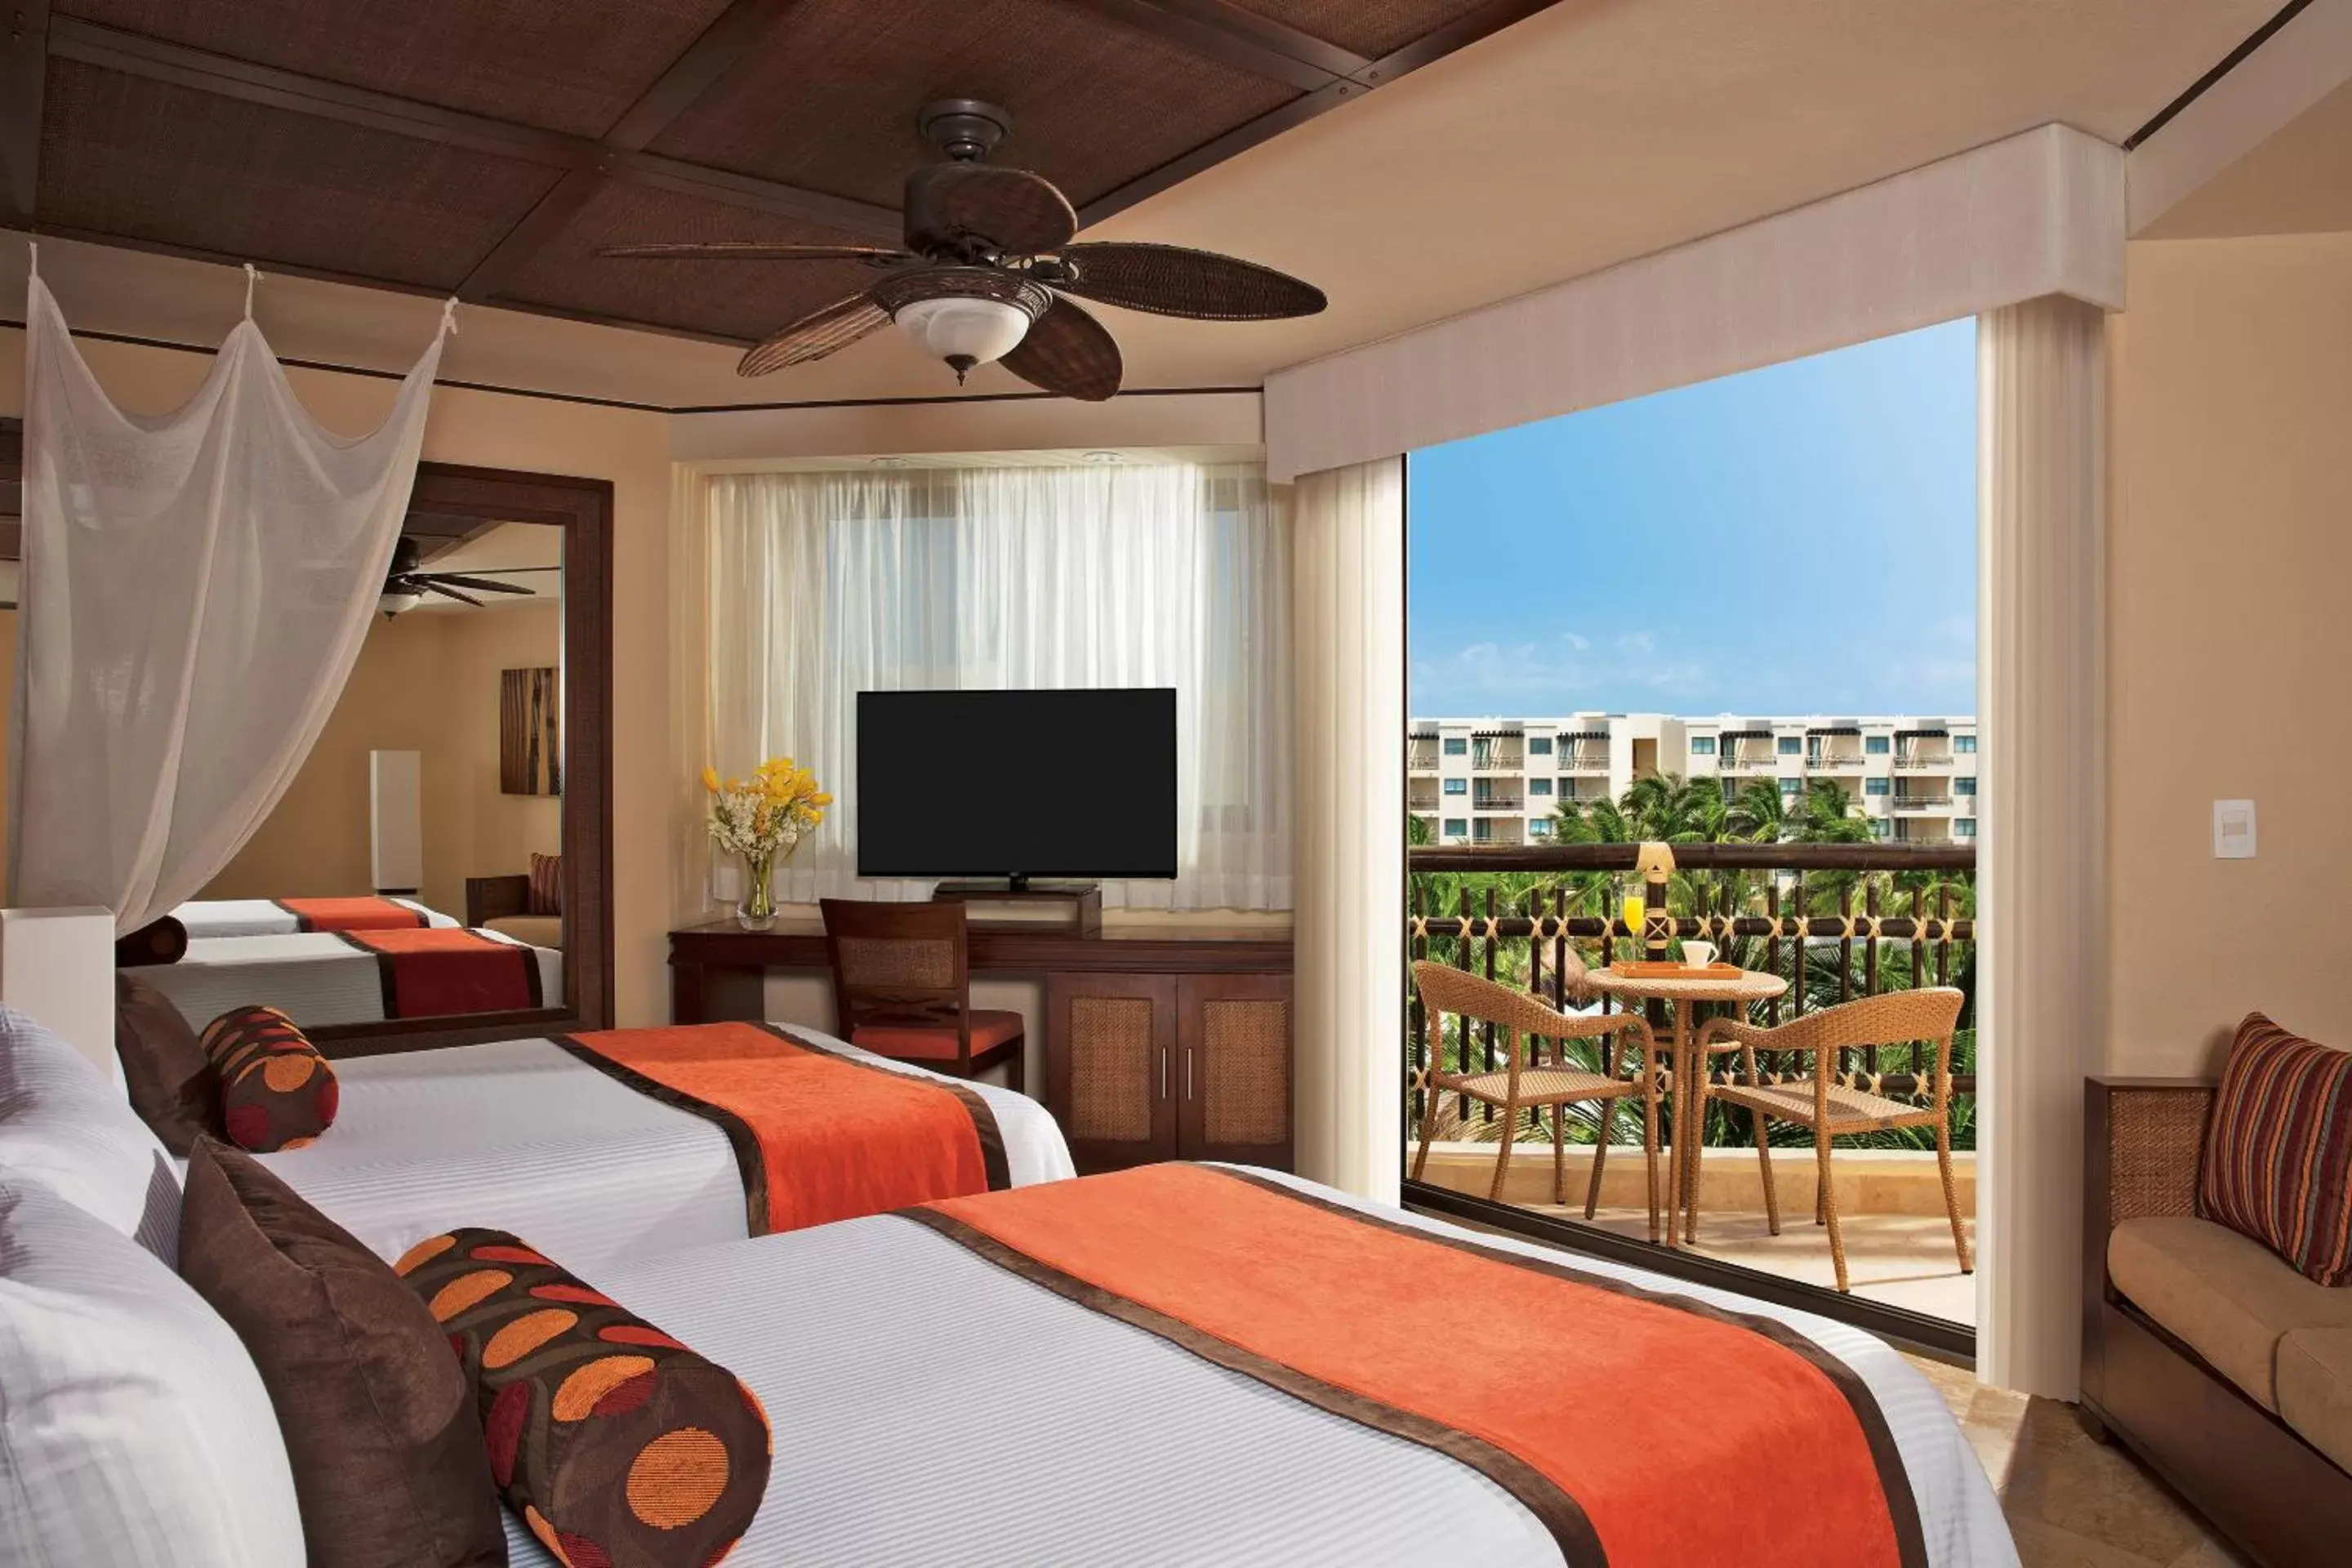 Bed in Dreams Riviera Cancun Resort & Spa - All Inclusive